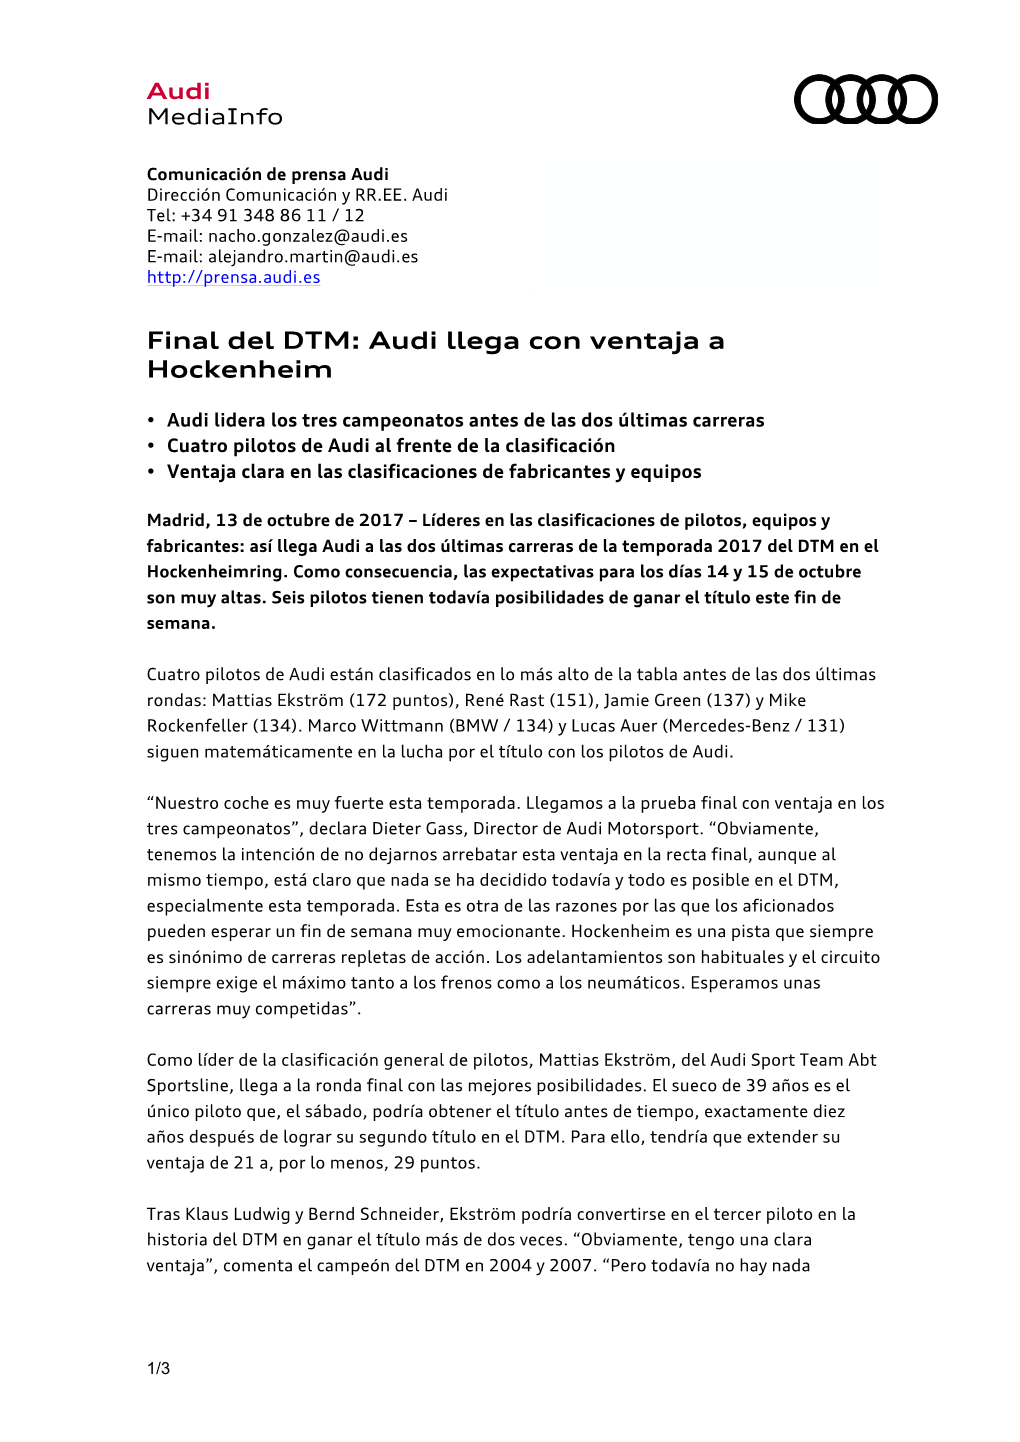 Final Del DTM: Audi Llega Con Ventaja a Hockenheim